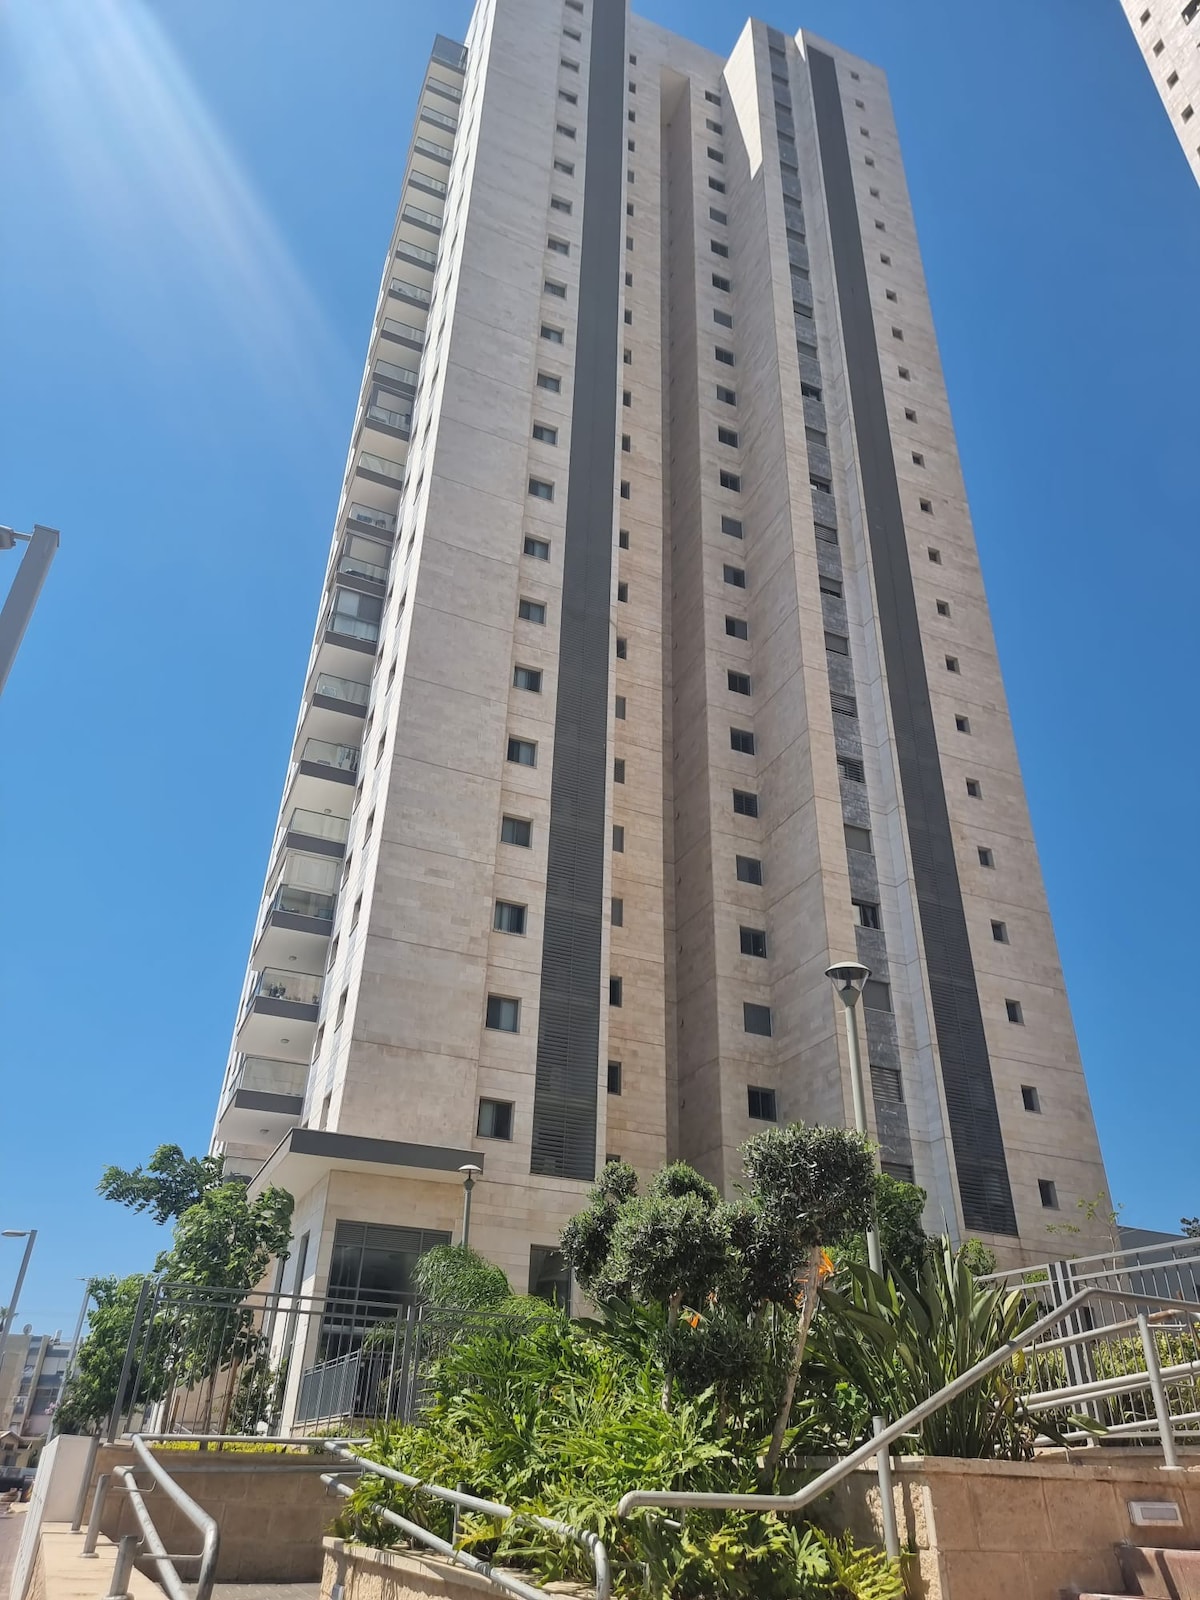 Acre Haifa屋顶公寓
25楼
壮观景色